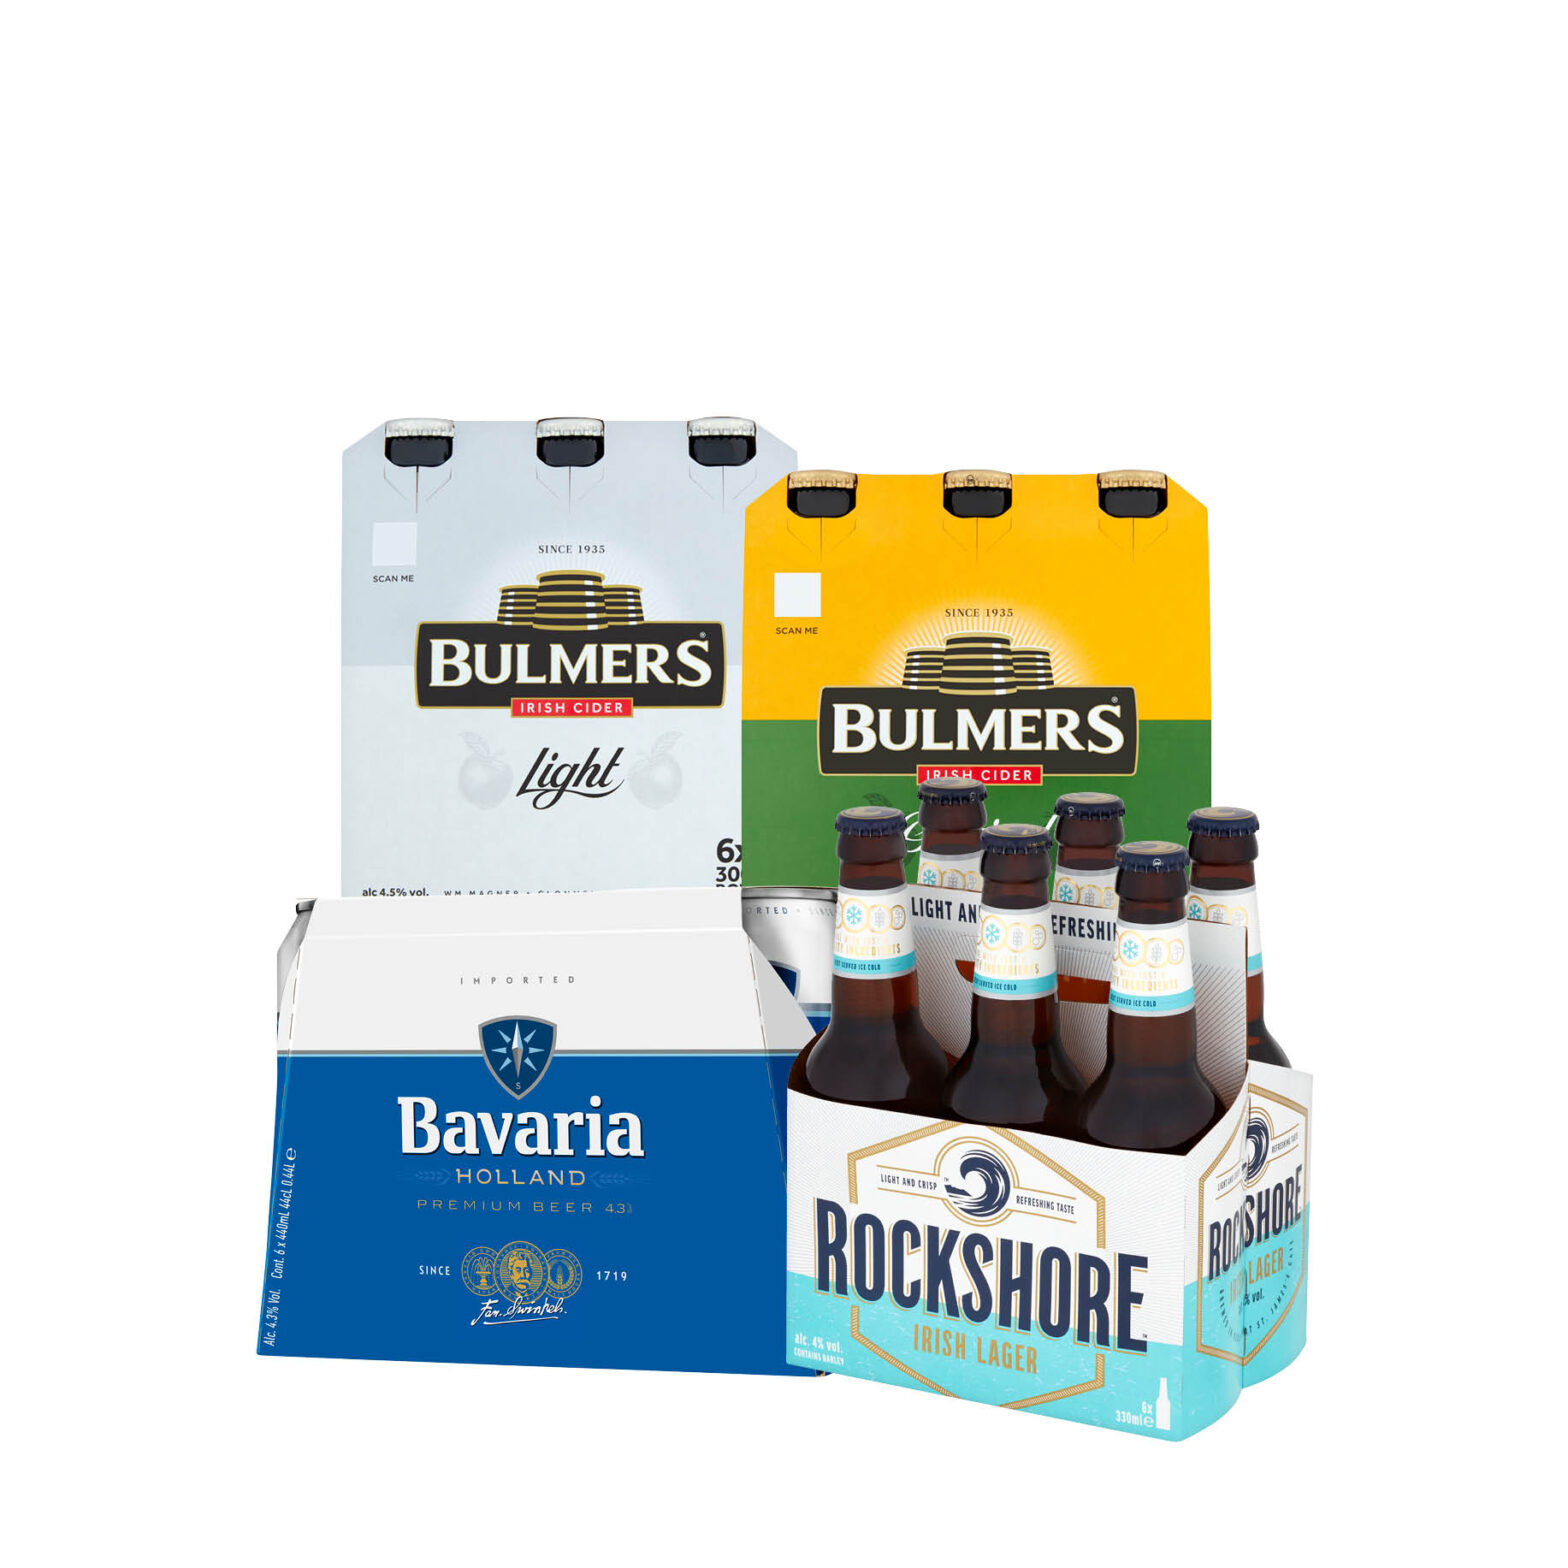 Bulmers Light / Original Cider Bottle 6 Pack / Bavaria Can 6 Pack / Rockshore Irish Lager Bottle 6 Pack